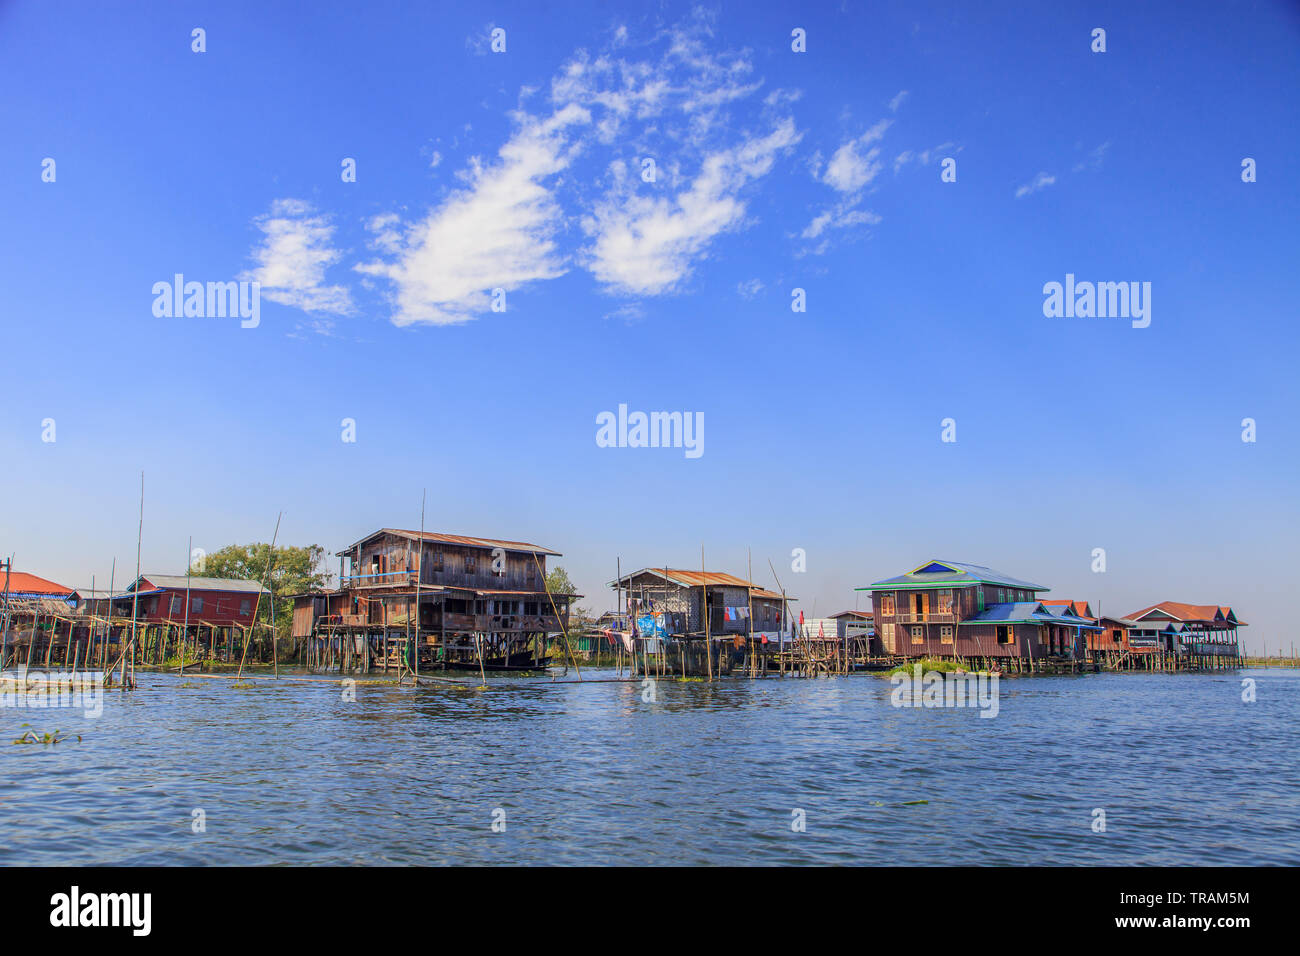 Villaggio galleggiante sul Lago Inle, Myanmar Foto Stock